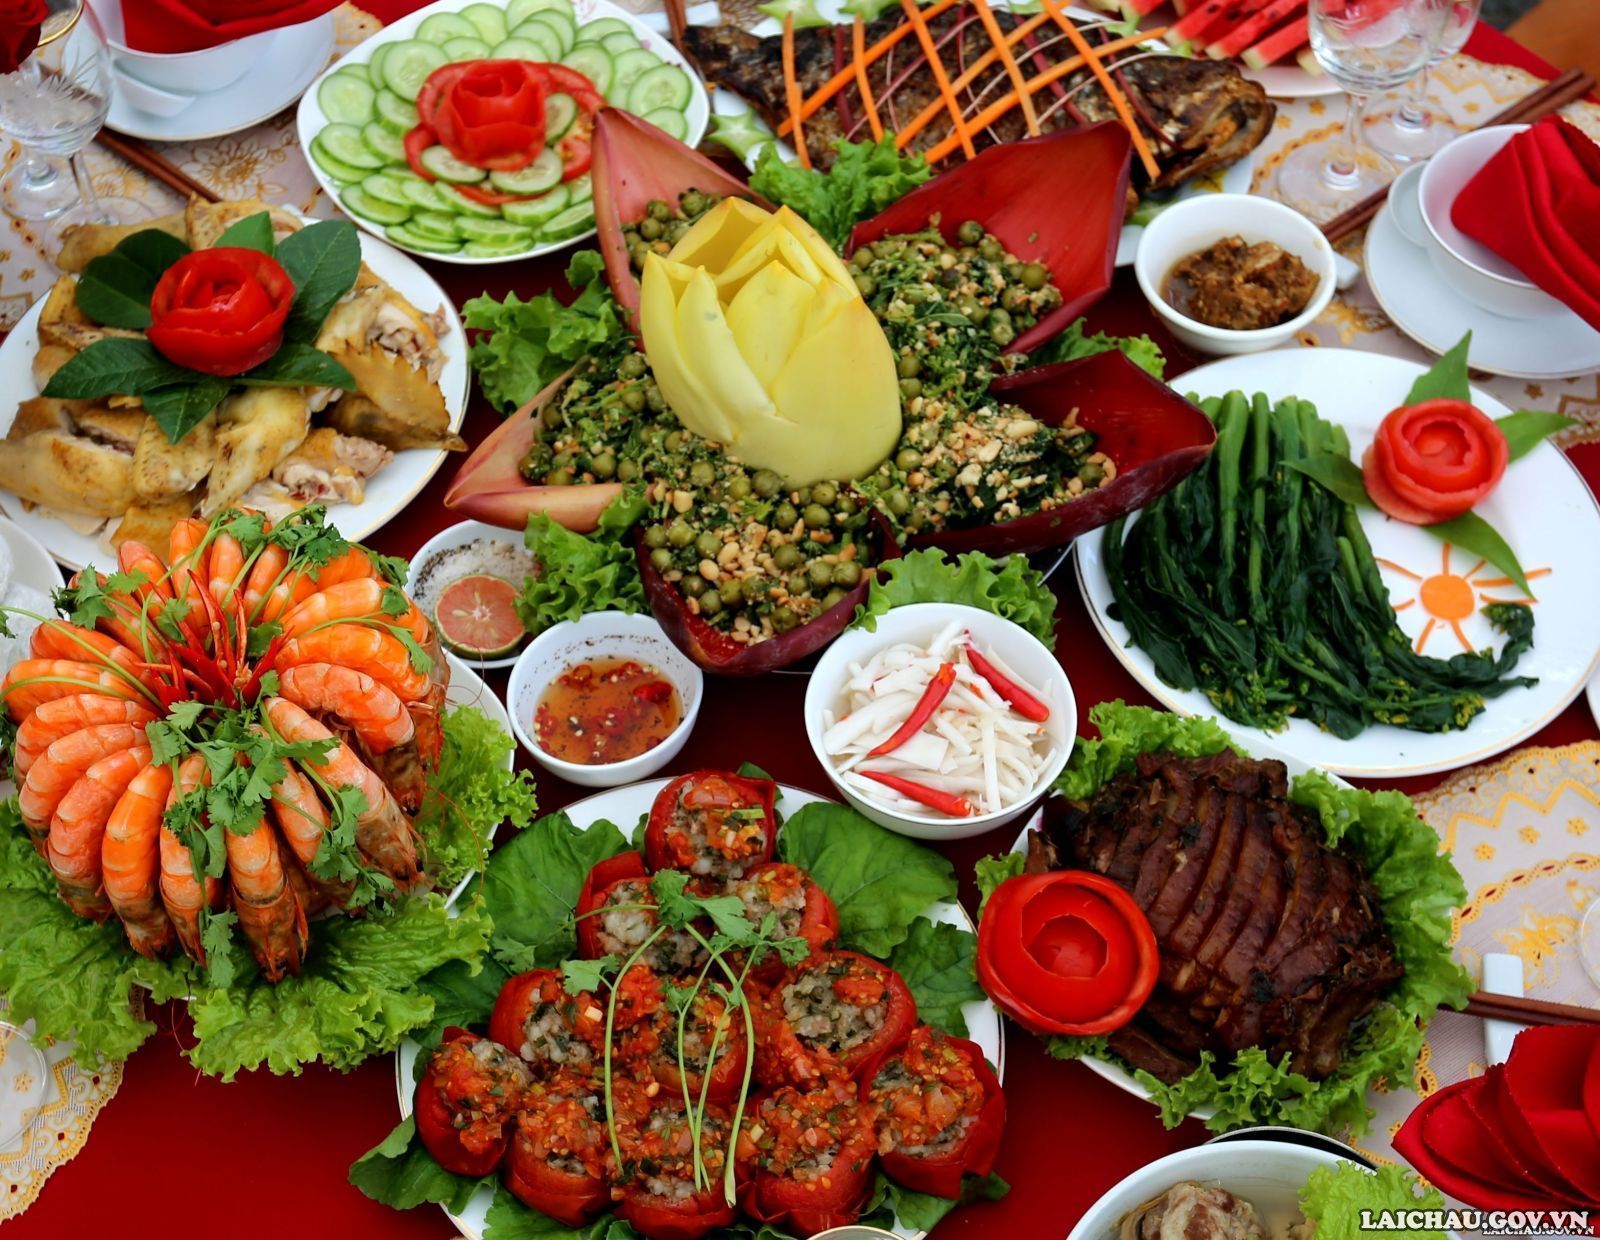 Và đến với Lai Châu, du khách cũng sẽ được thưởng thức nhiều món ăn được chế biến cầu kỳ, tinh tế và hấp dẫn. Nhiều thực khách ăn xong nhớ mãi và mong muốn được quay trở lại để thưởng thức thêm một lần nữa những hương vị của núi rừng.